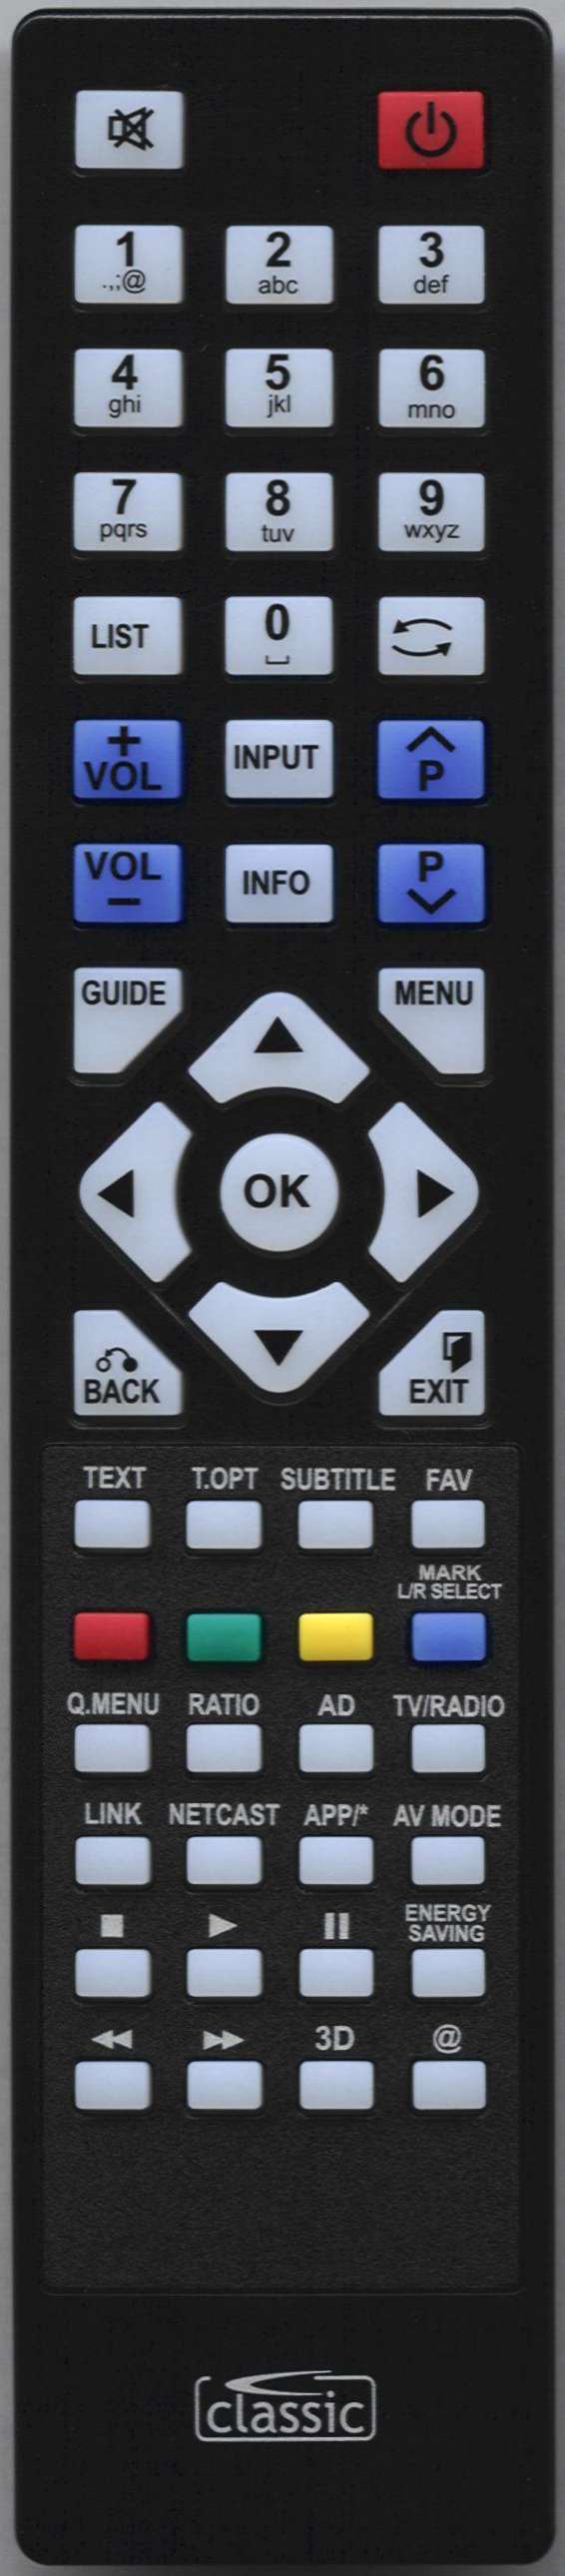 LG 37LE4500-ZA Remote Control